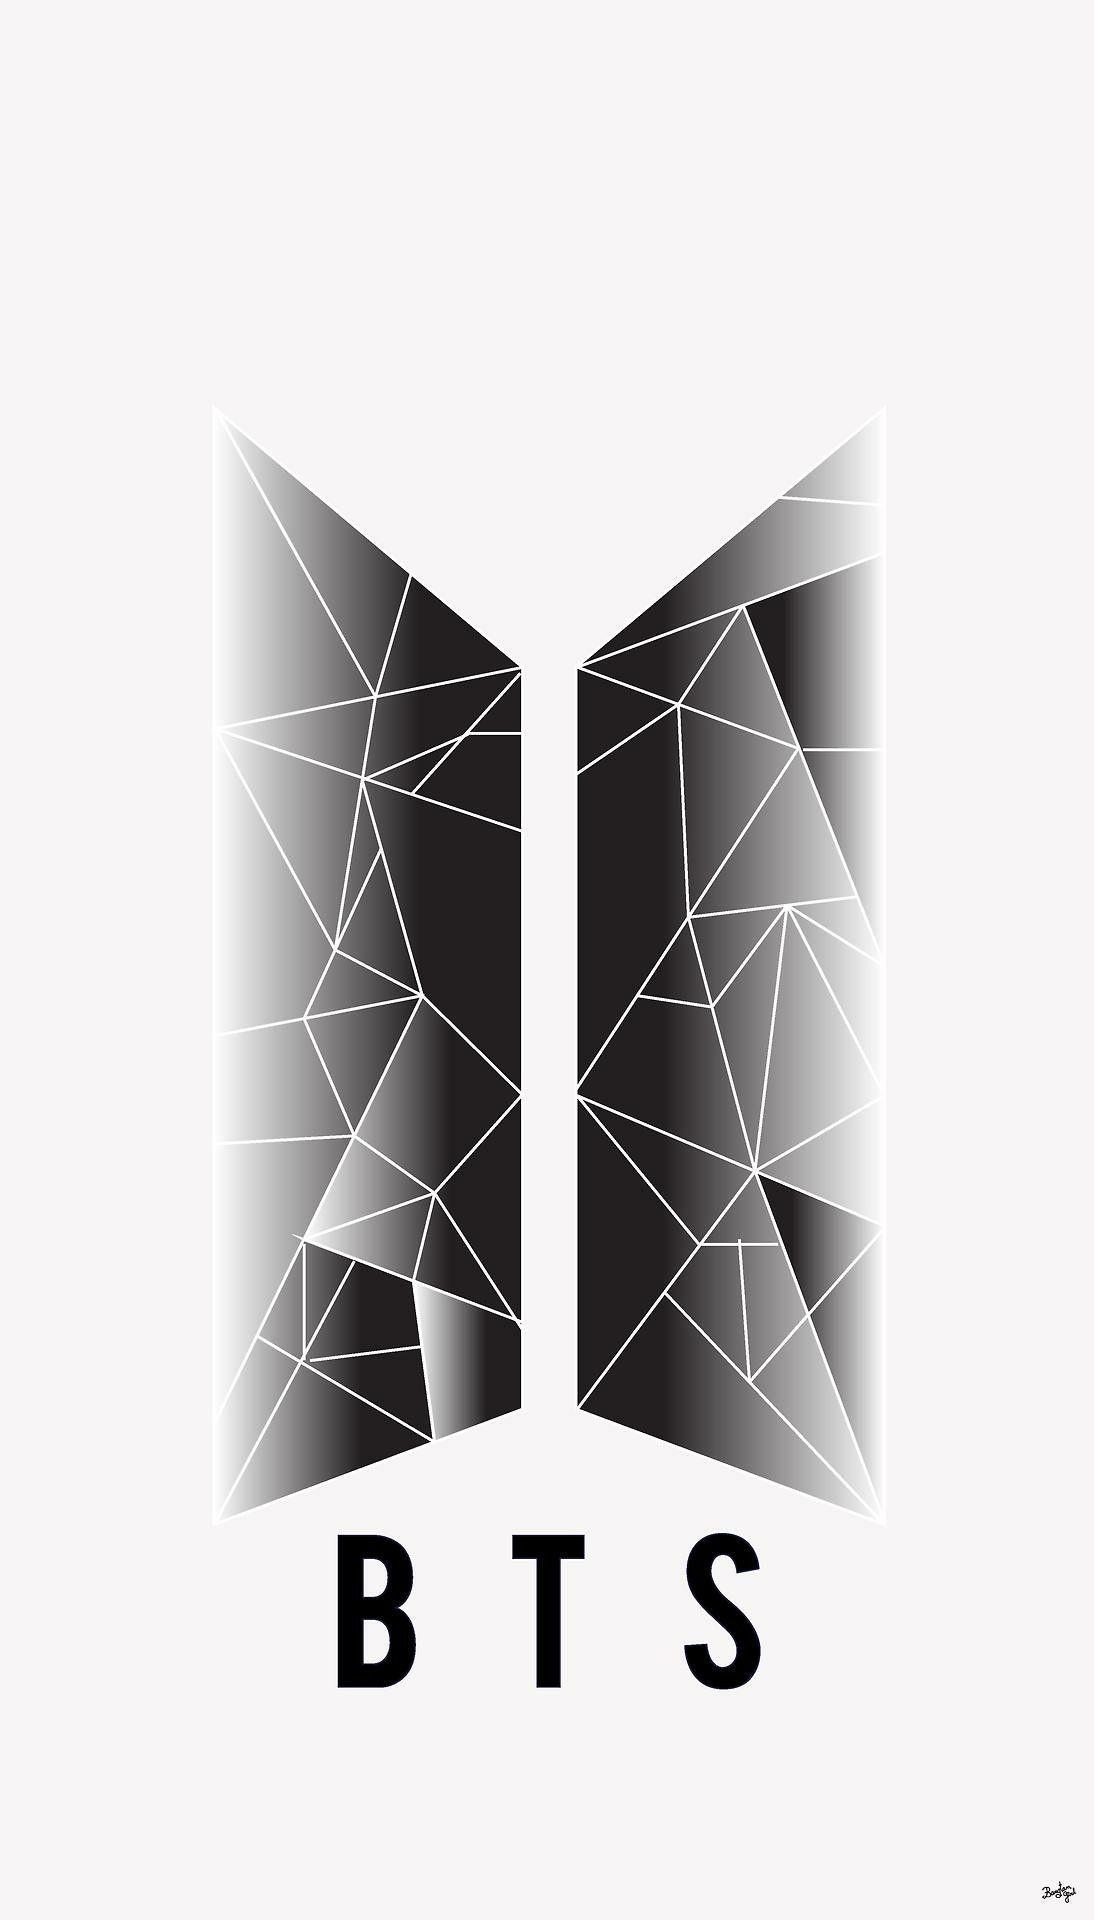  BTS Logo  HD Wallpapers Wallpaper Cave